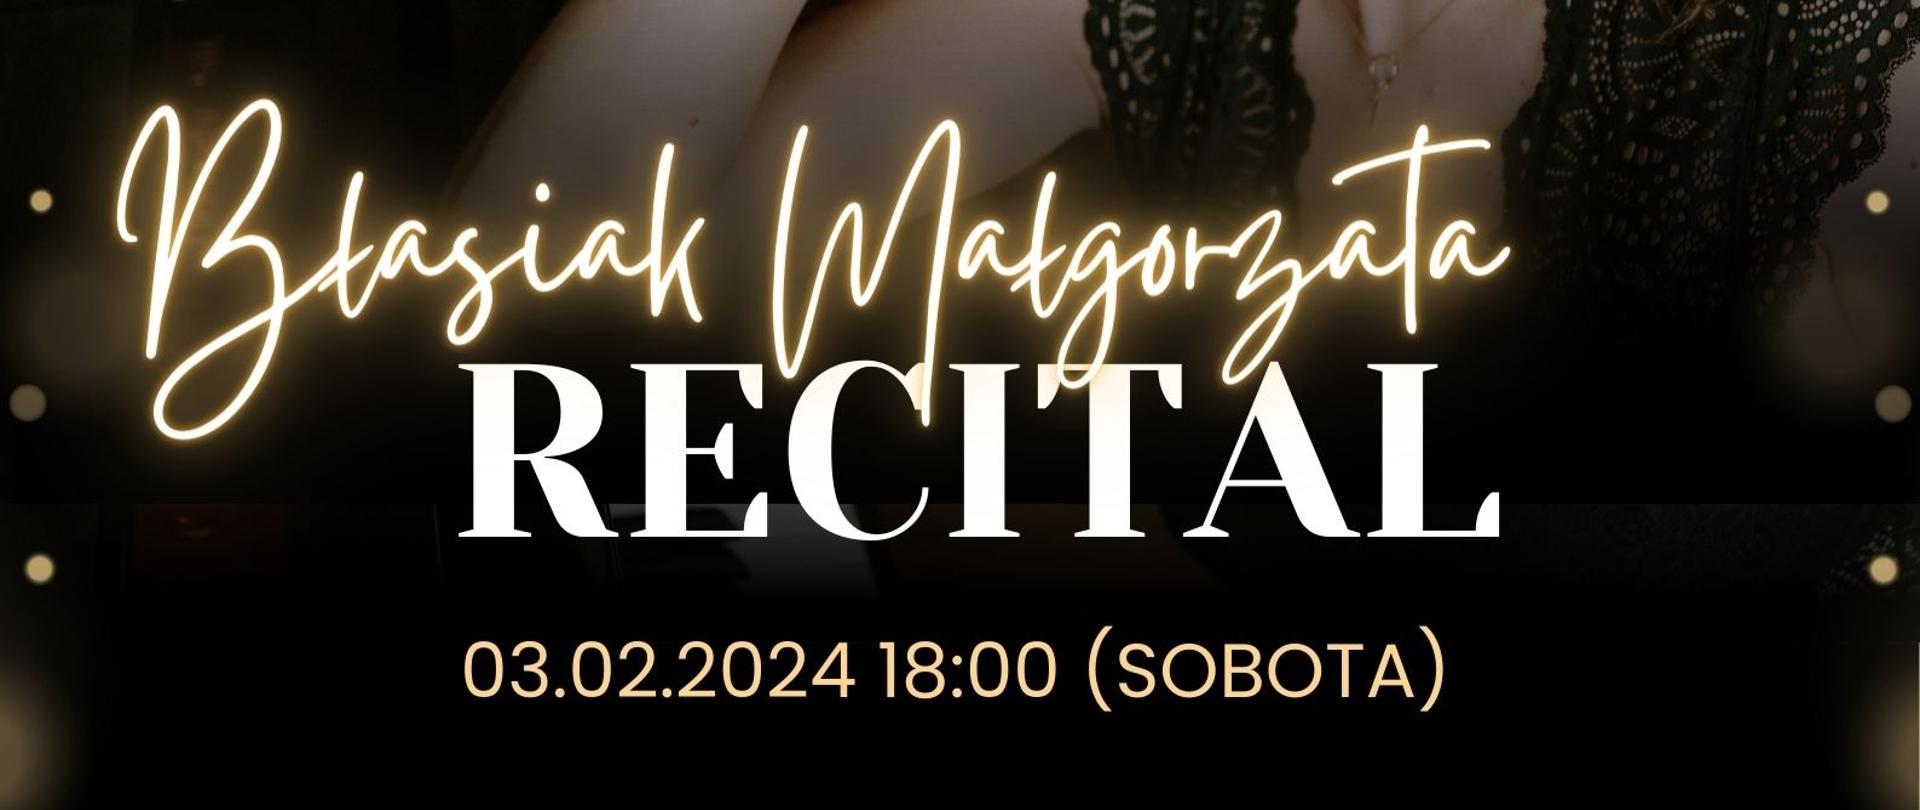 Plakat informacyjny dotyczący recitalu Małgorzaty Błasiak odbywającego się w dniu 03.02.2024 r. o godz. 18.00.